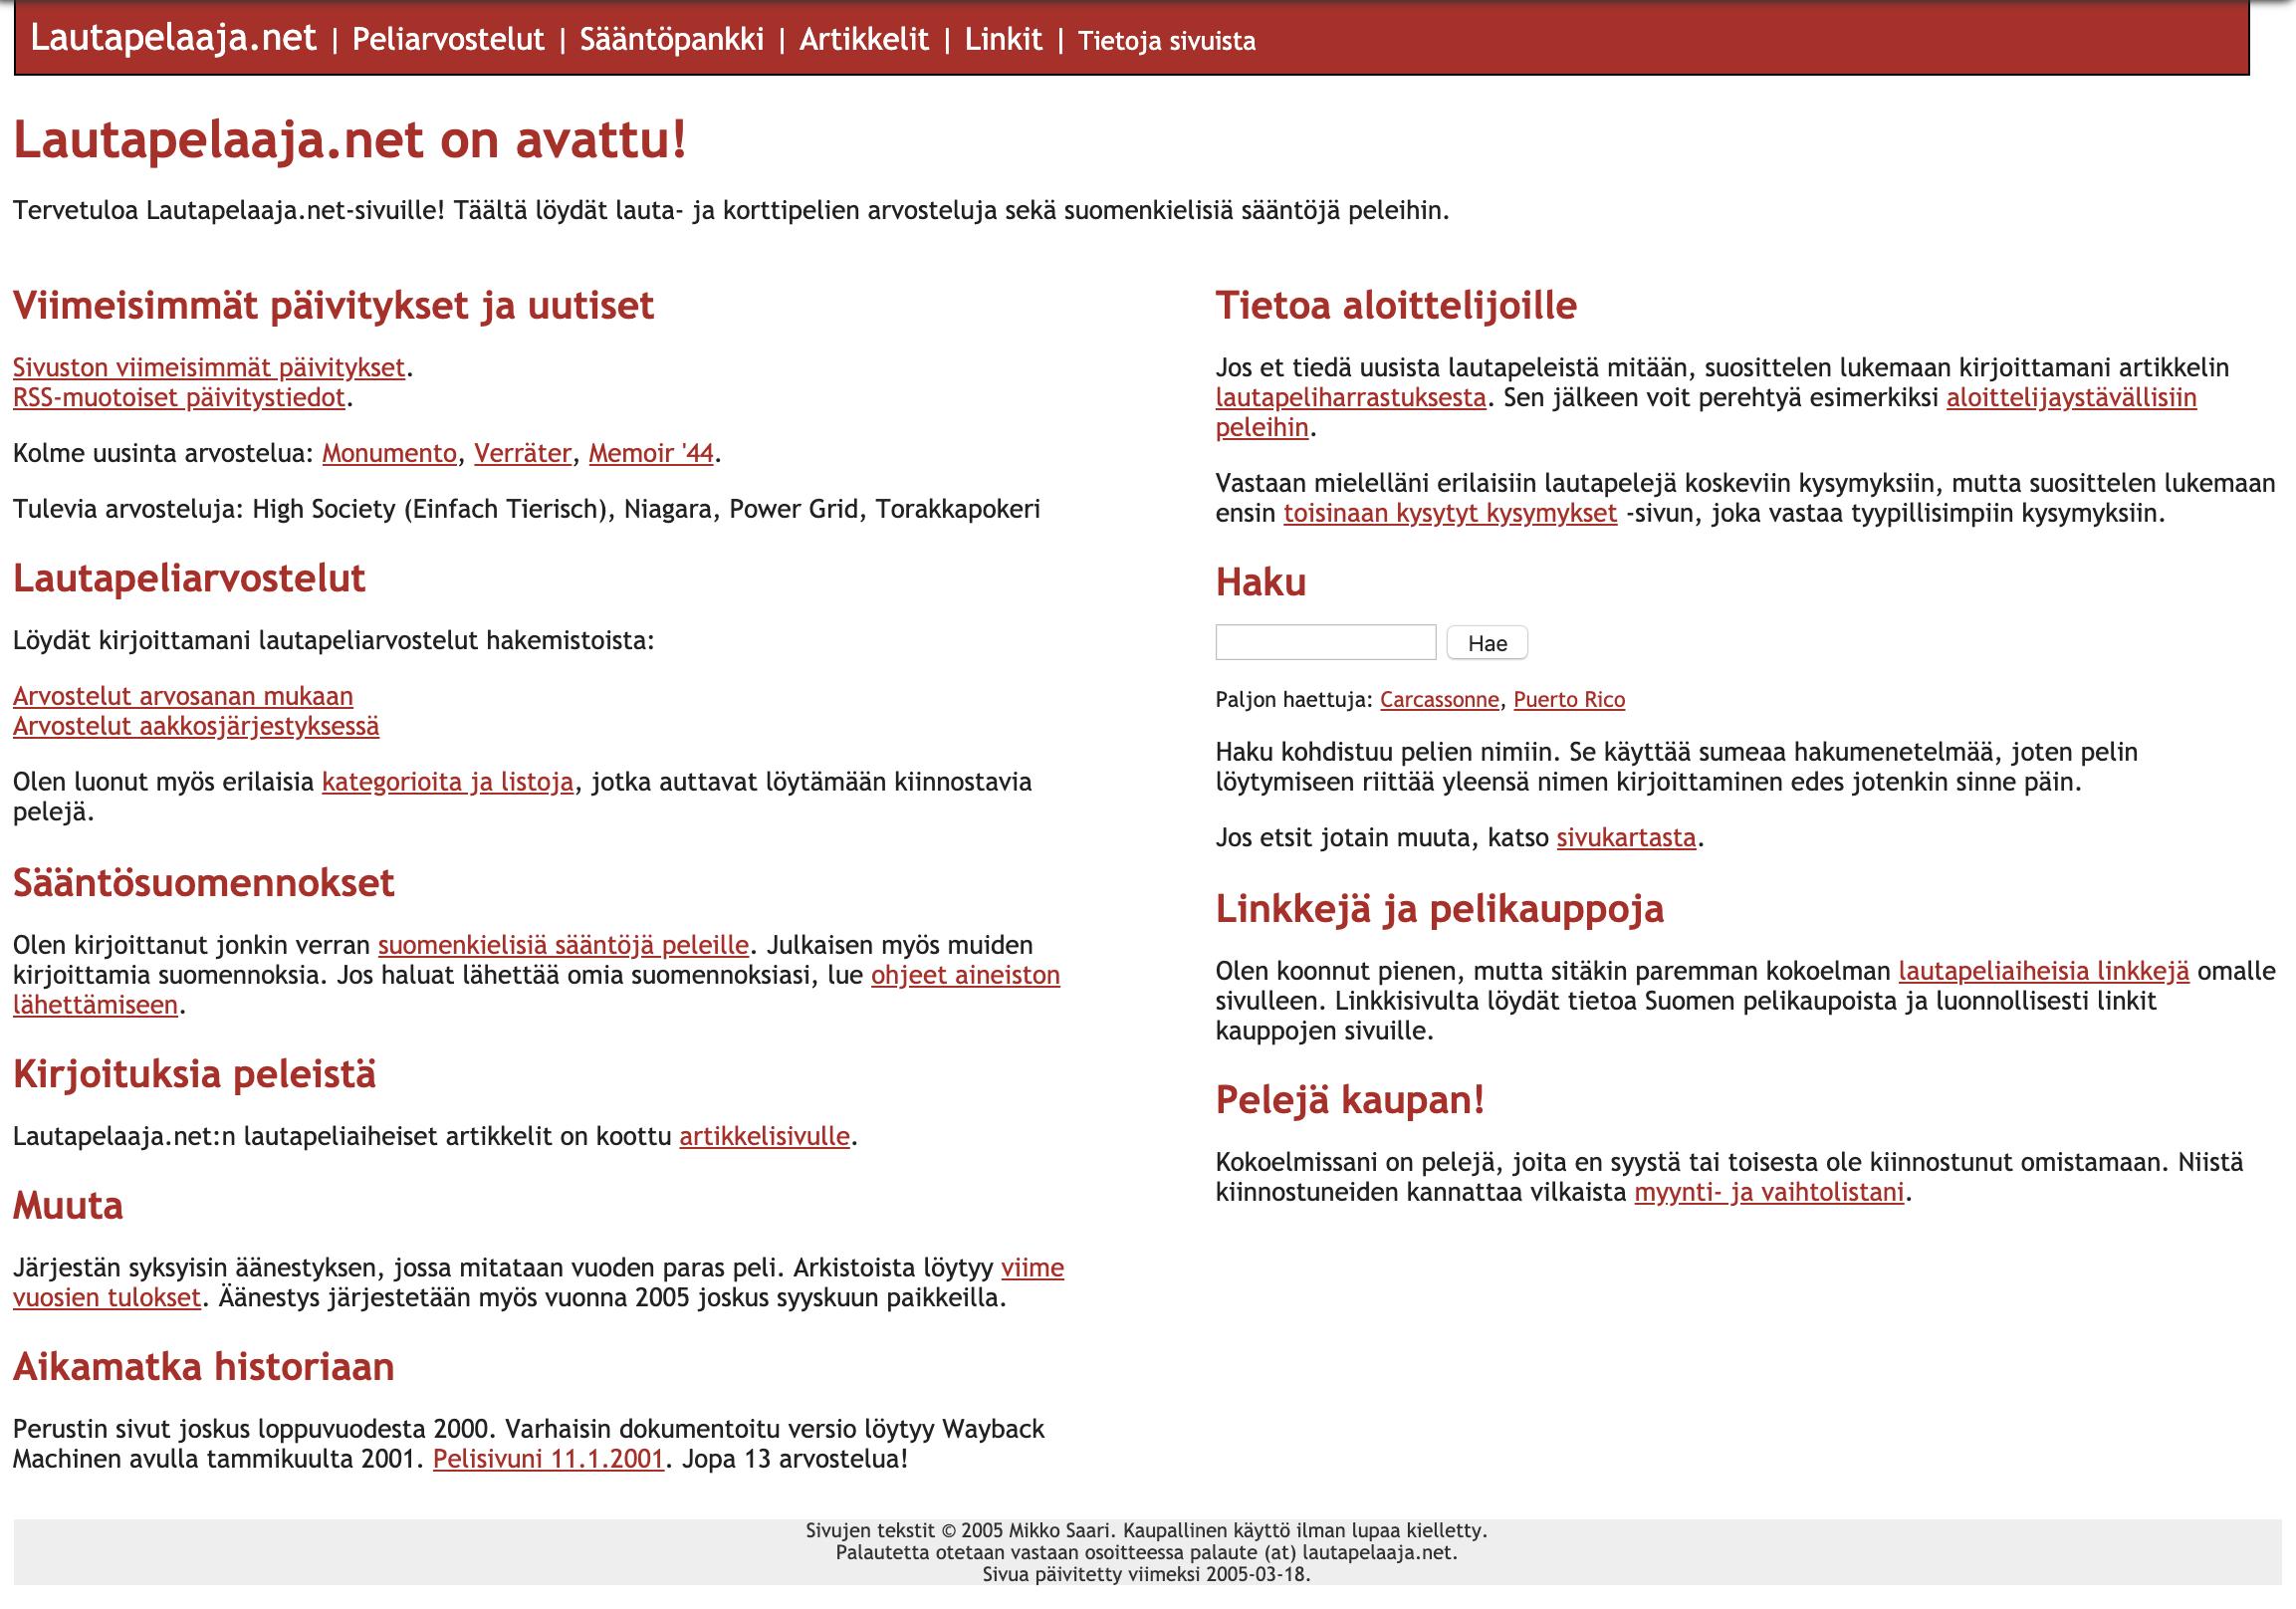 Ruutukaappaus Lautapelaaja.net-sivustolta maaliskuulta 2005.